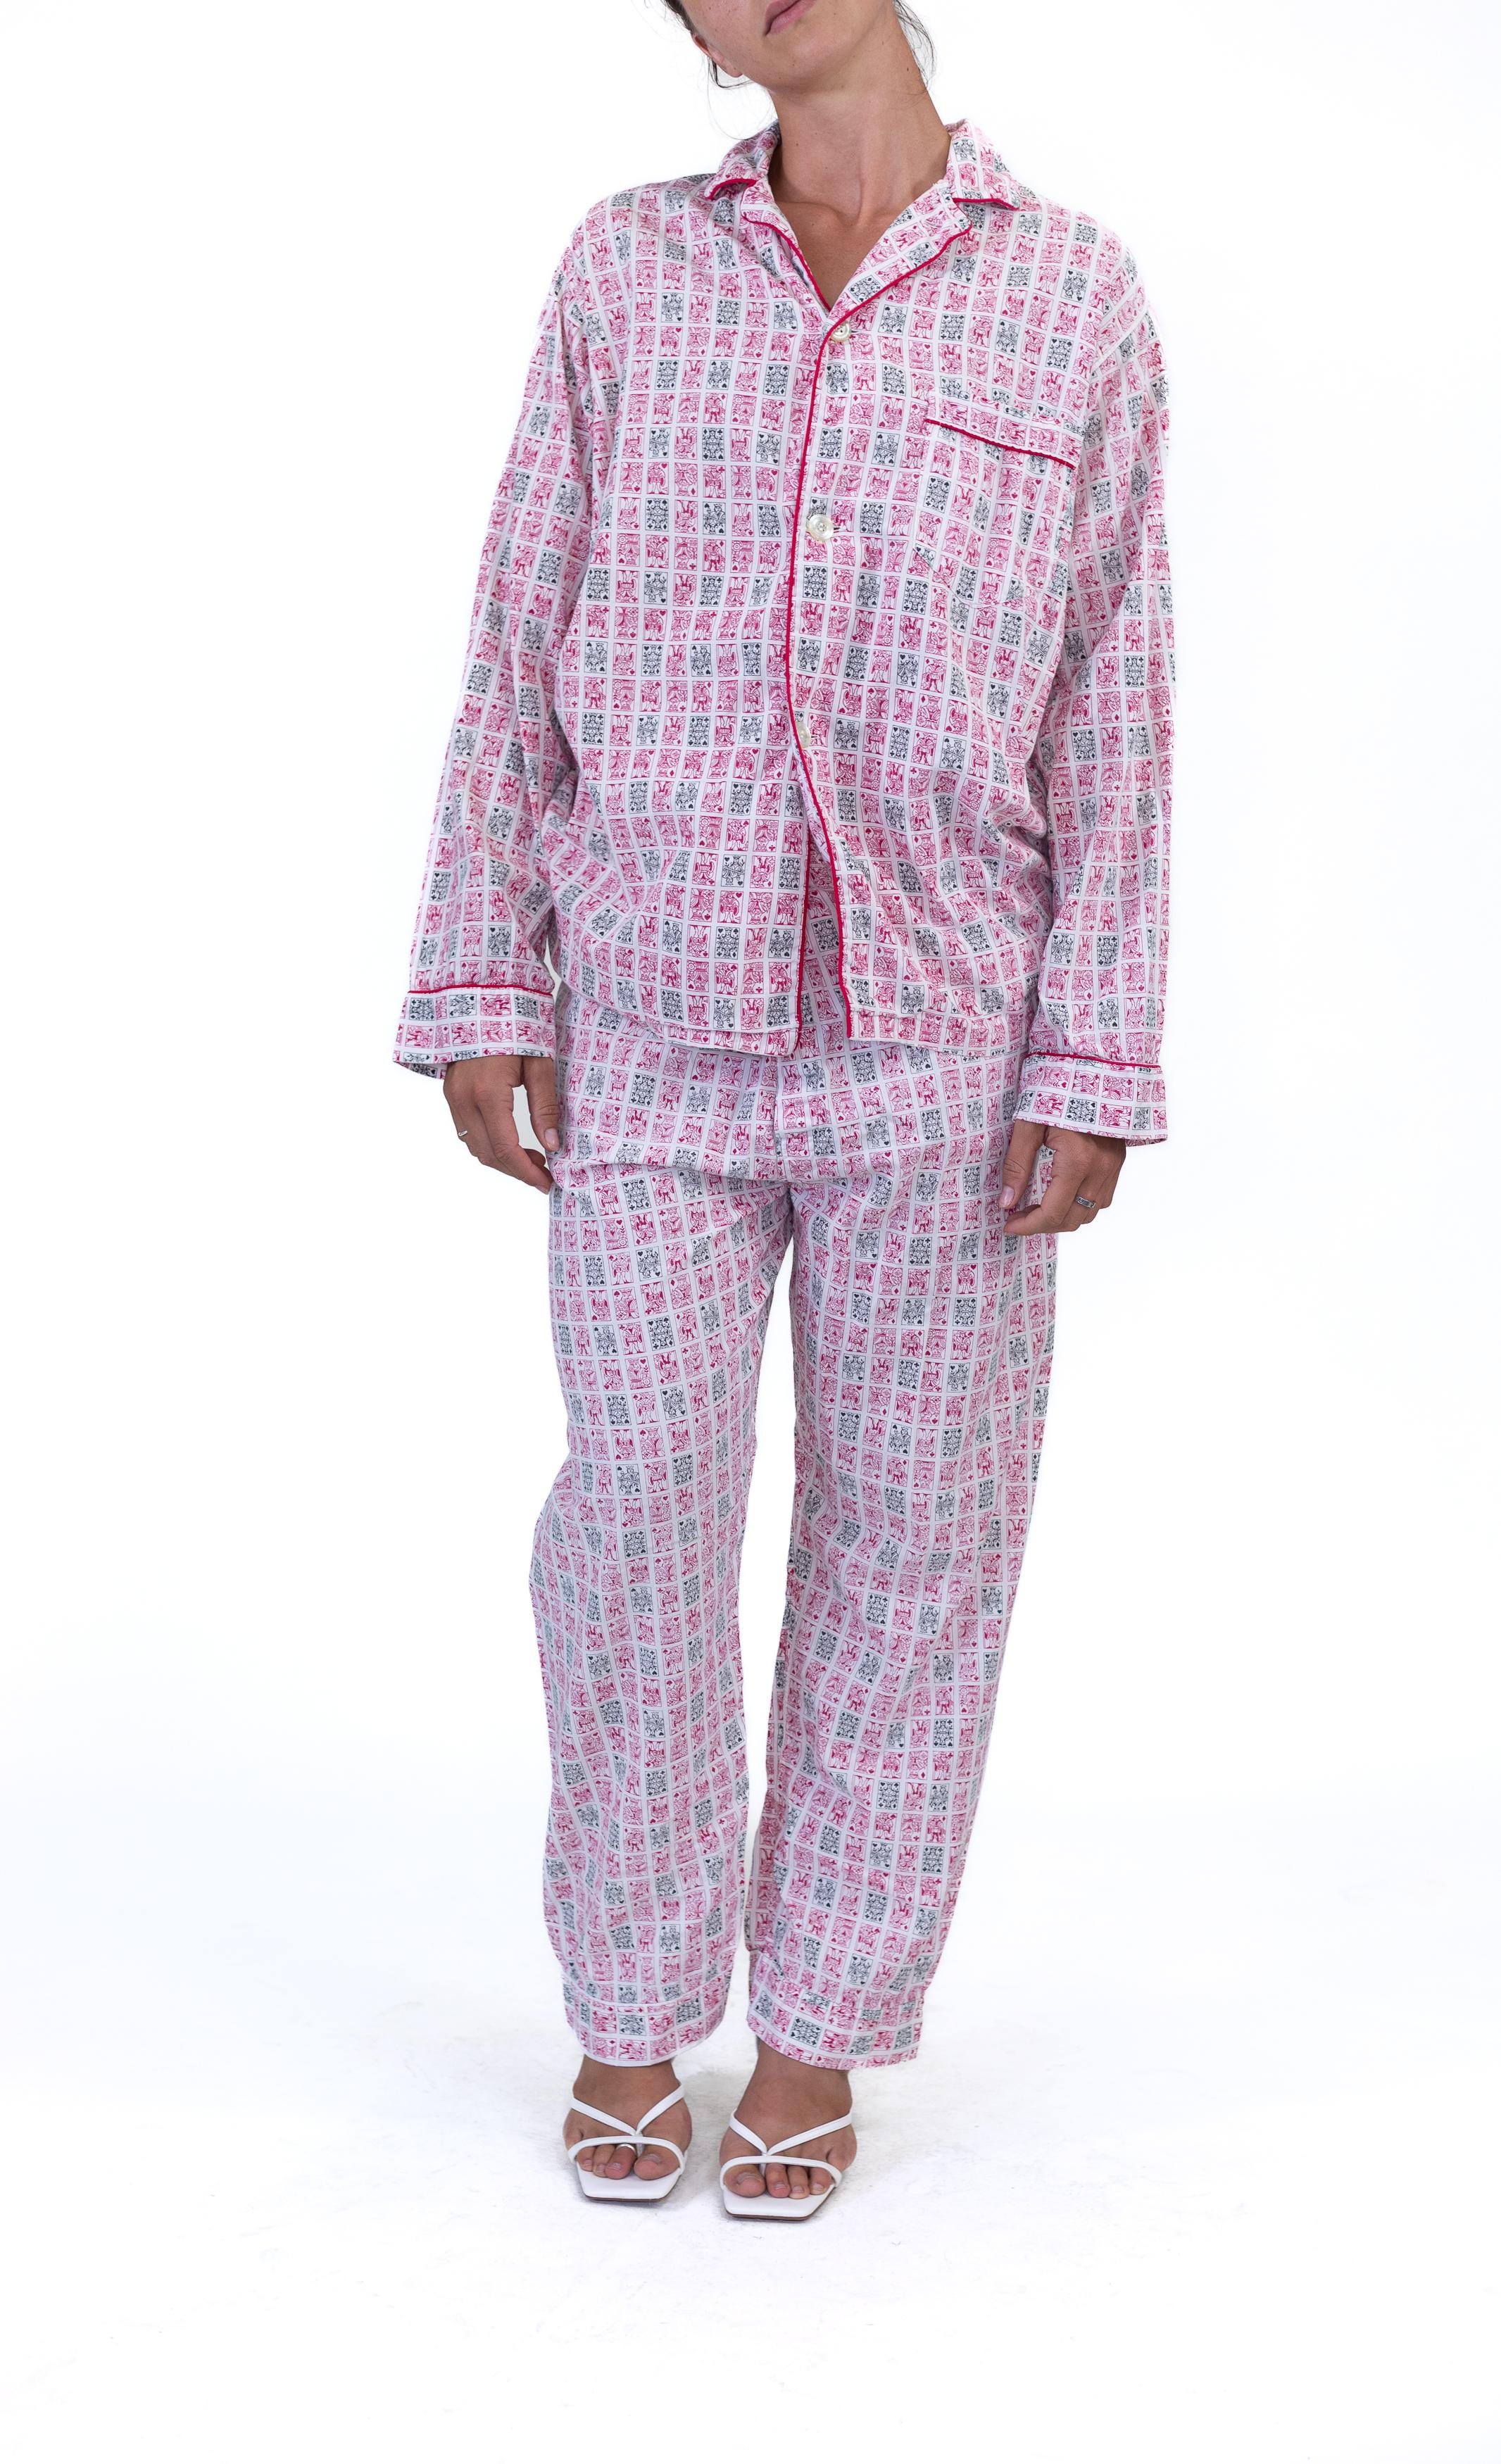 1950s women's pajamas